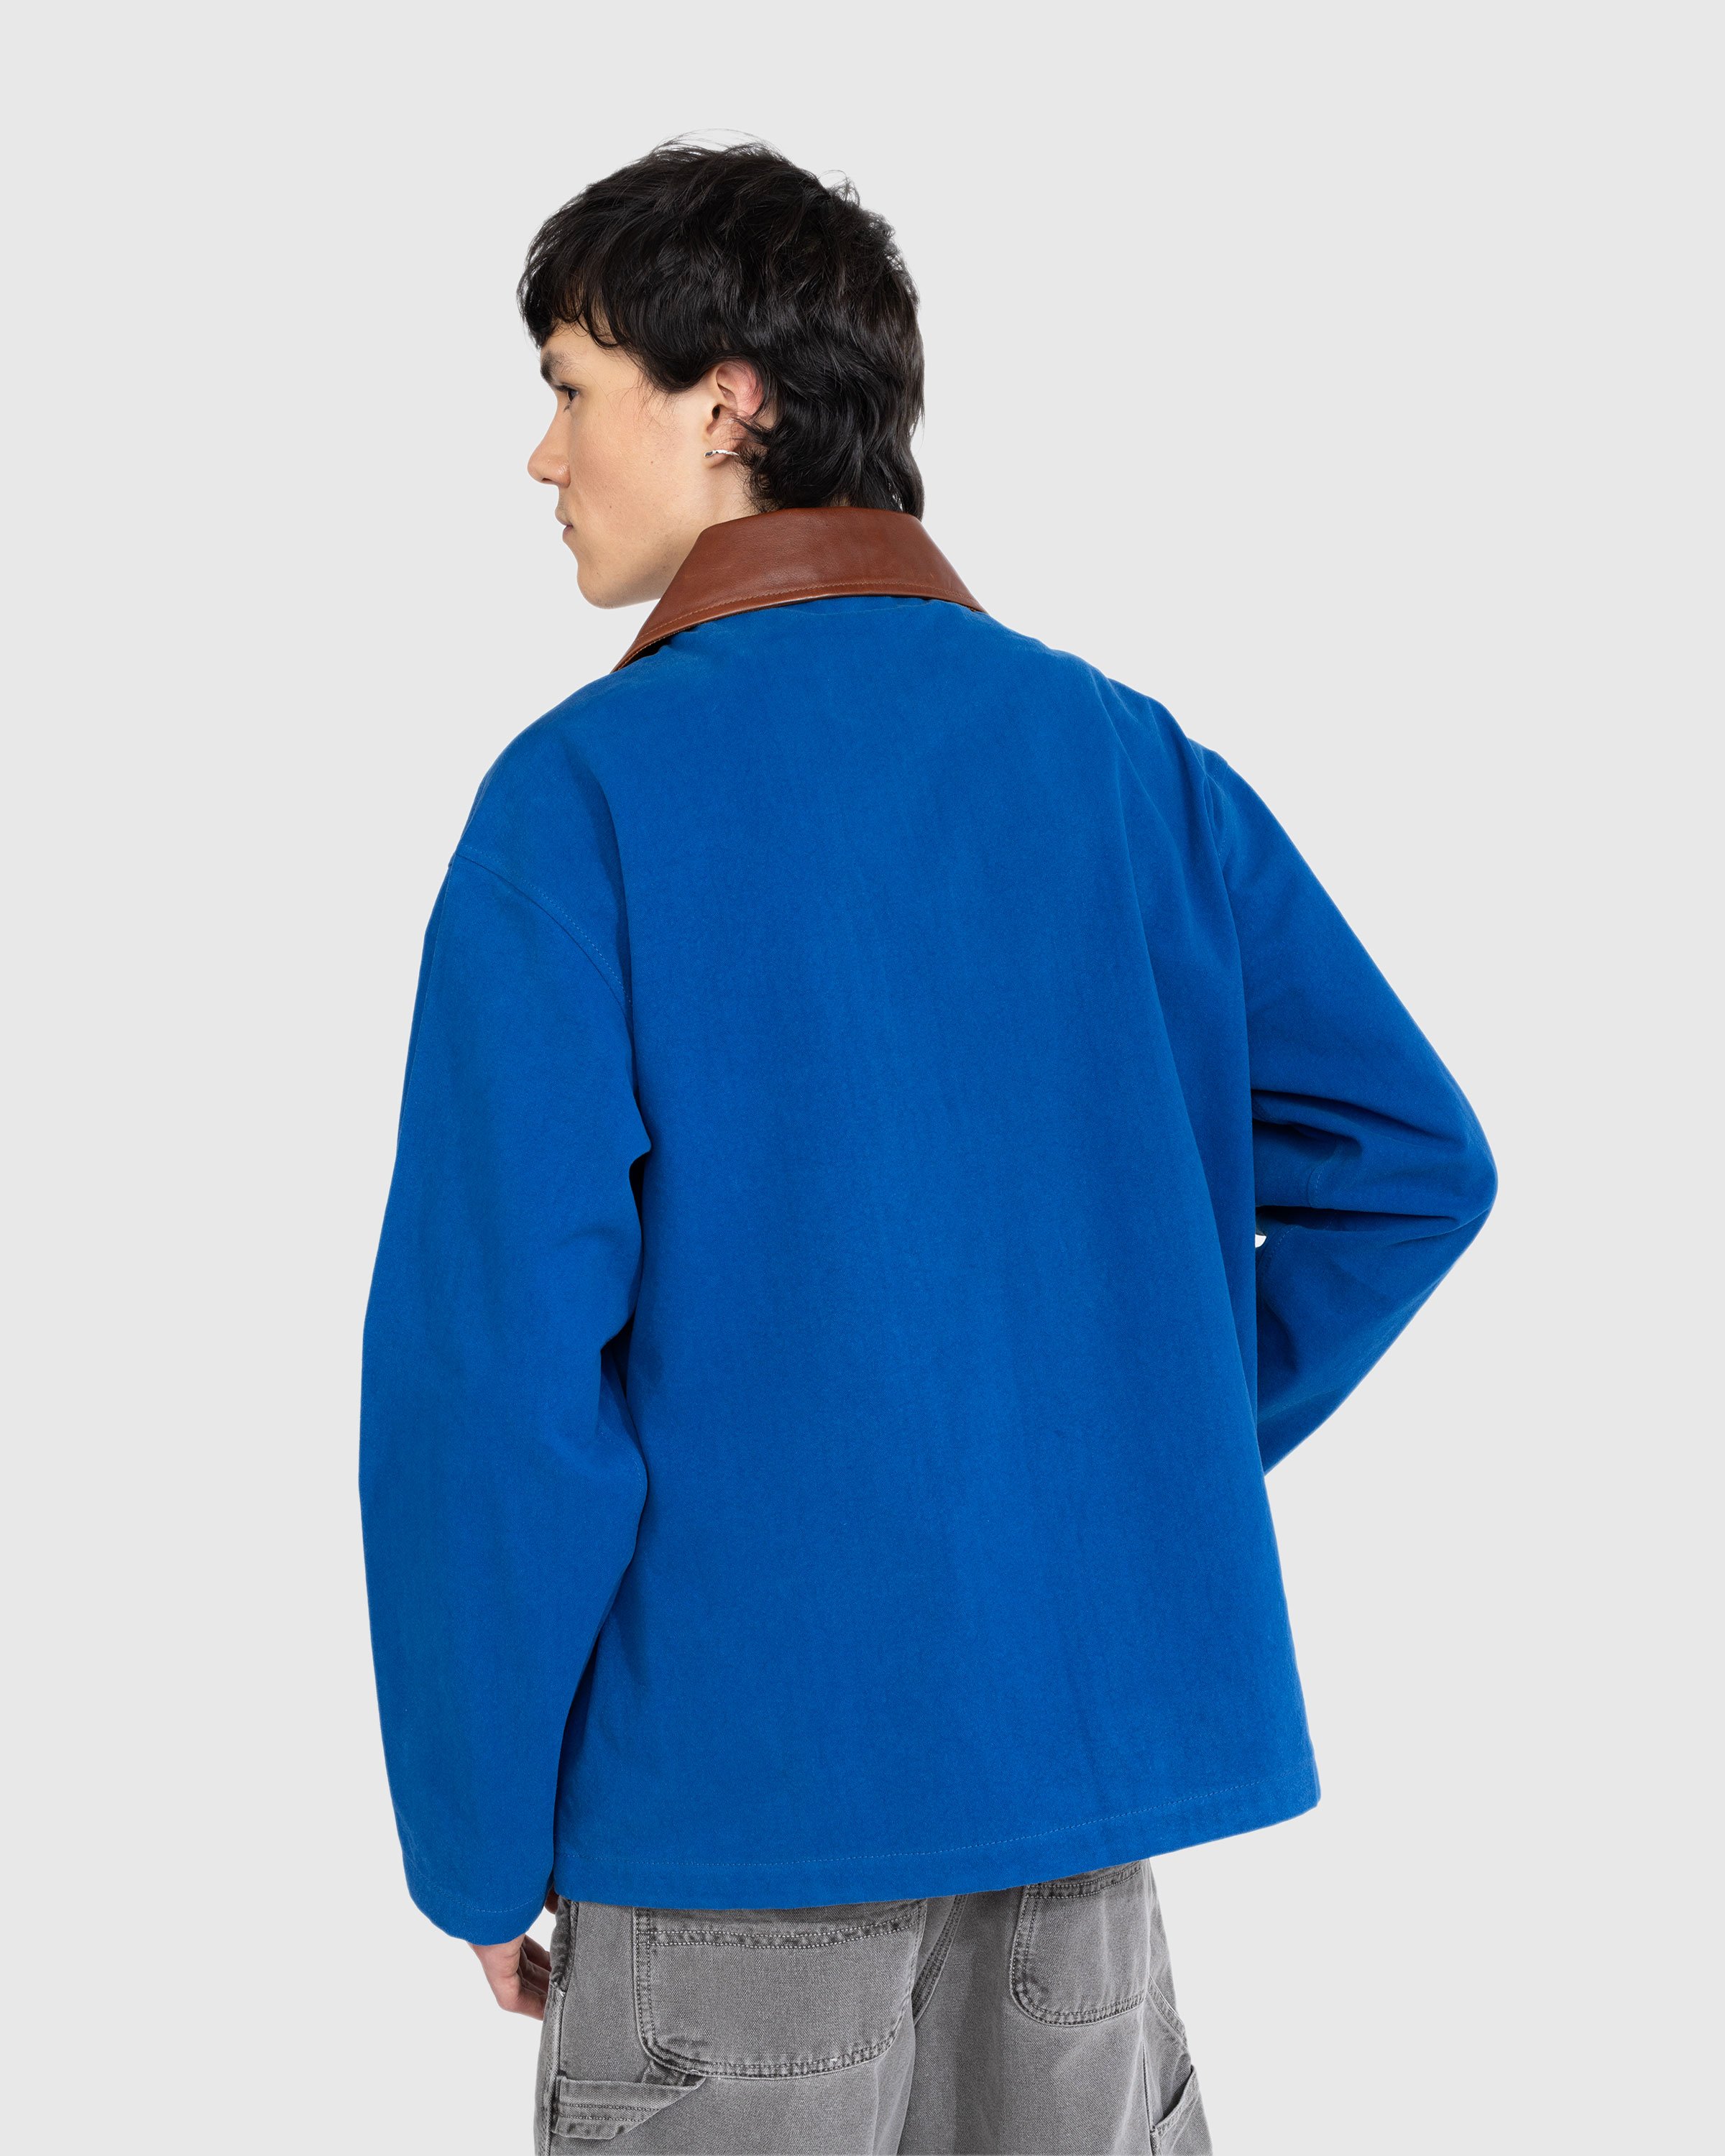 Bode - Leather Tab Jacket - Clothing - Blue - Image 4